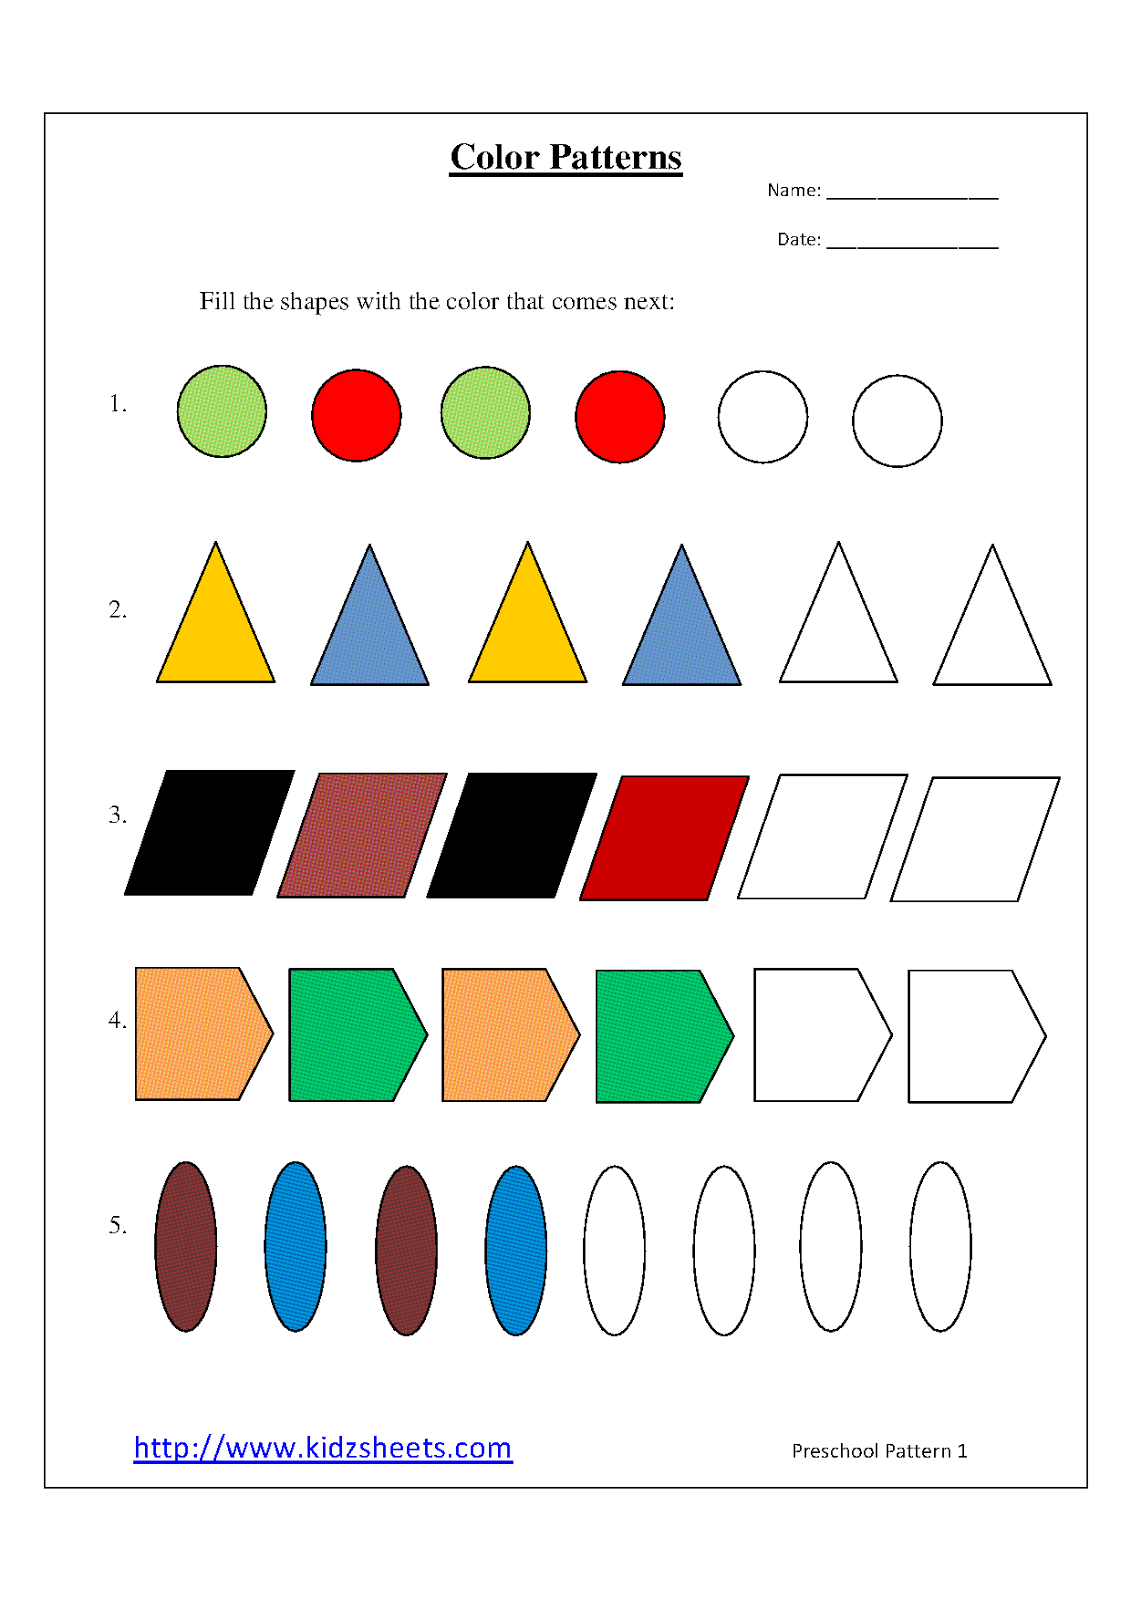 Free Printable Preschool Pattern Worksheets